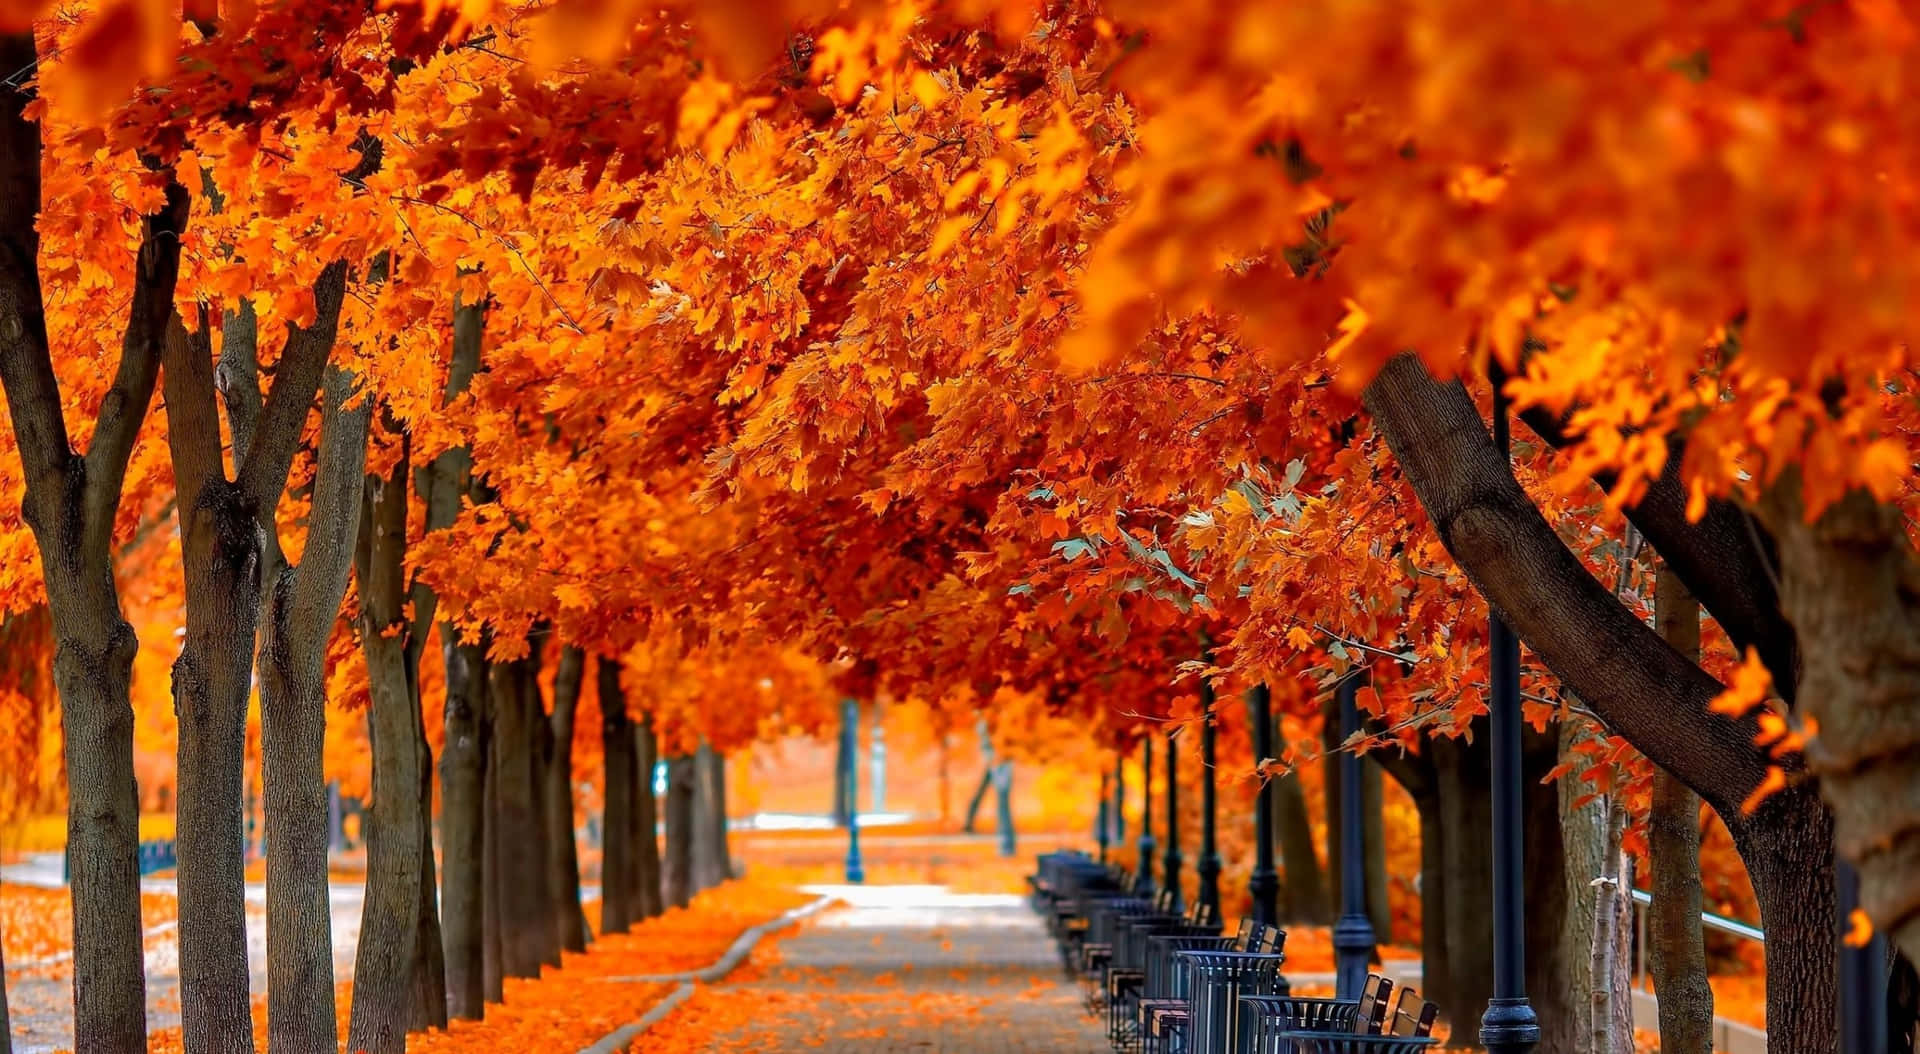 Aufgereihteherbstbäume Hintergrund Für Zoom Im Herbst.